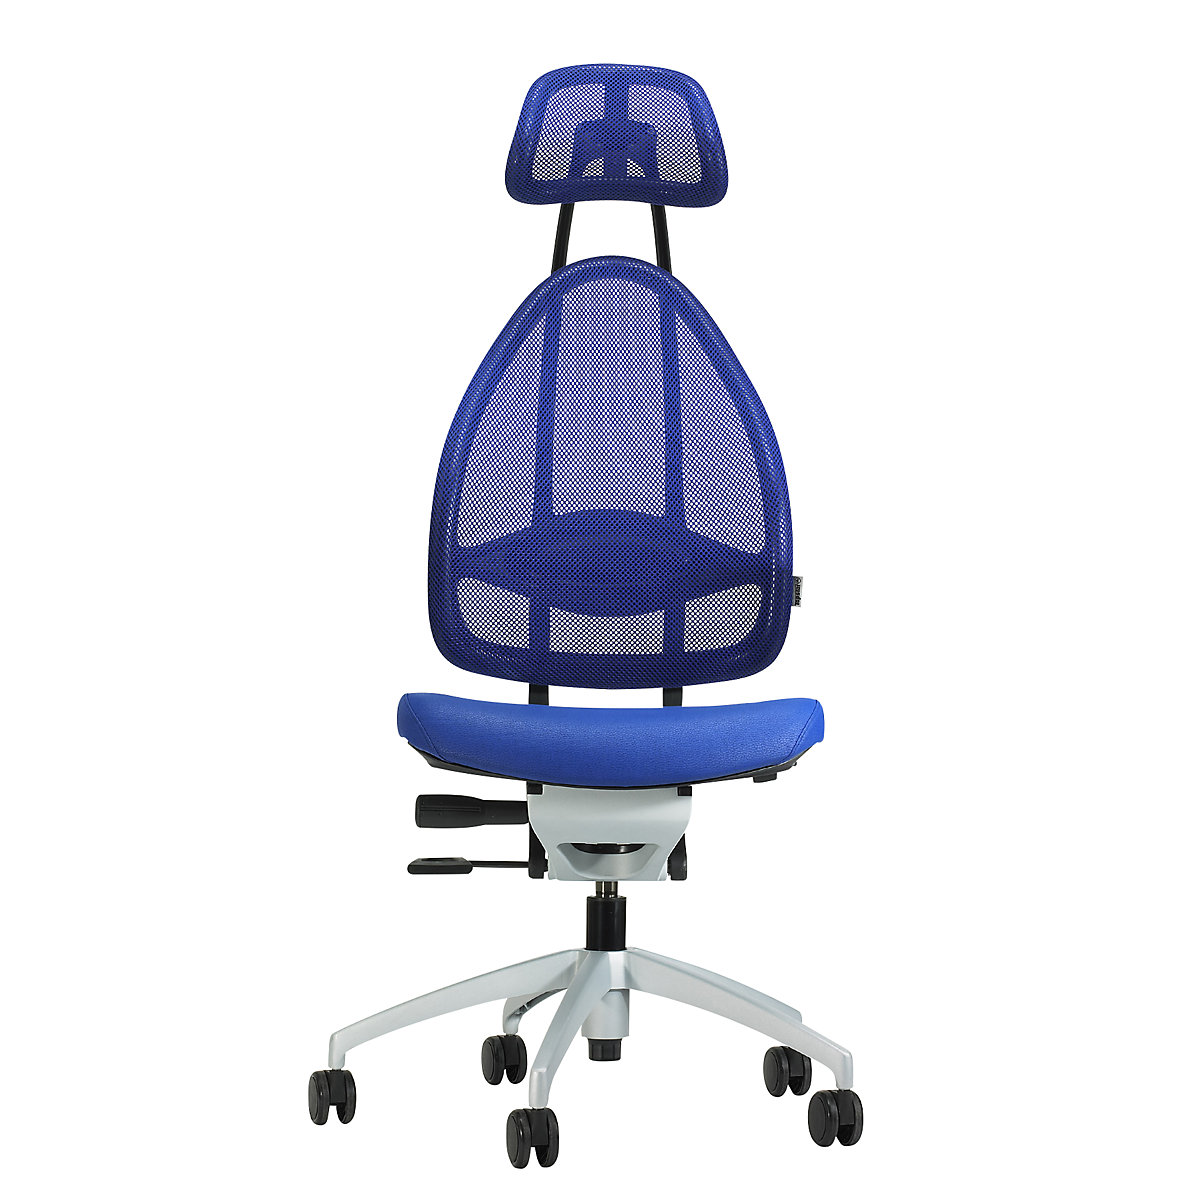 Uredska okretna stolica lijepog oblika, s naslonom za glavu i mrežastim naslonom - Topstar